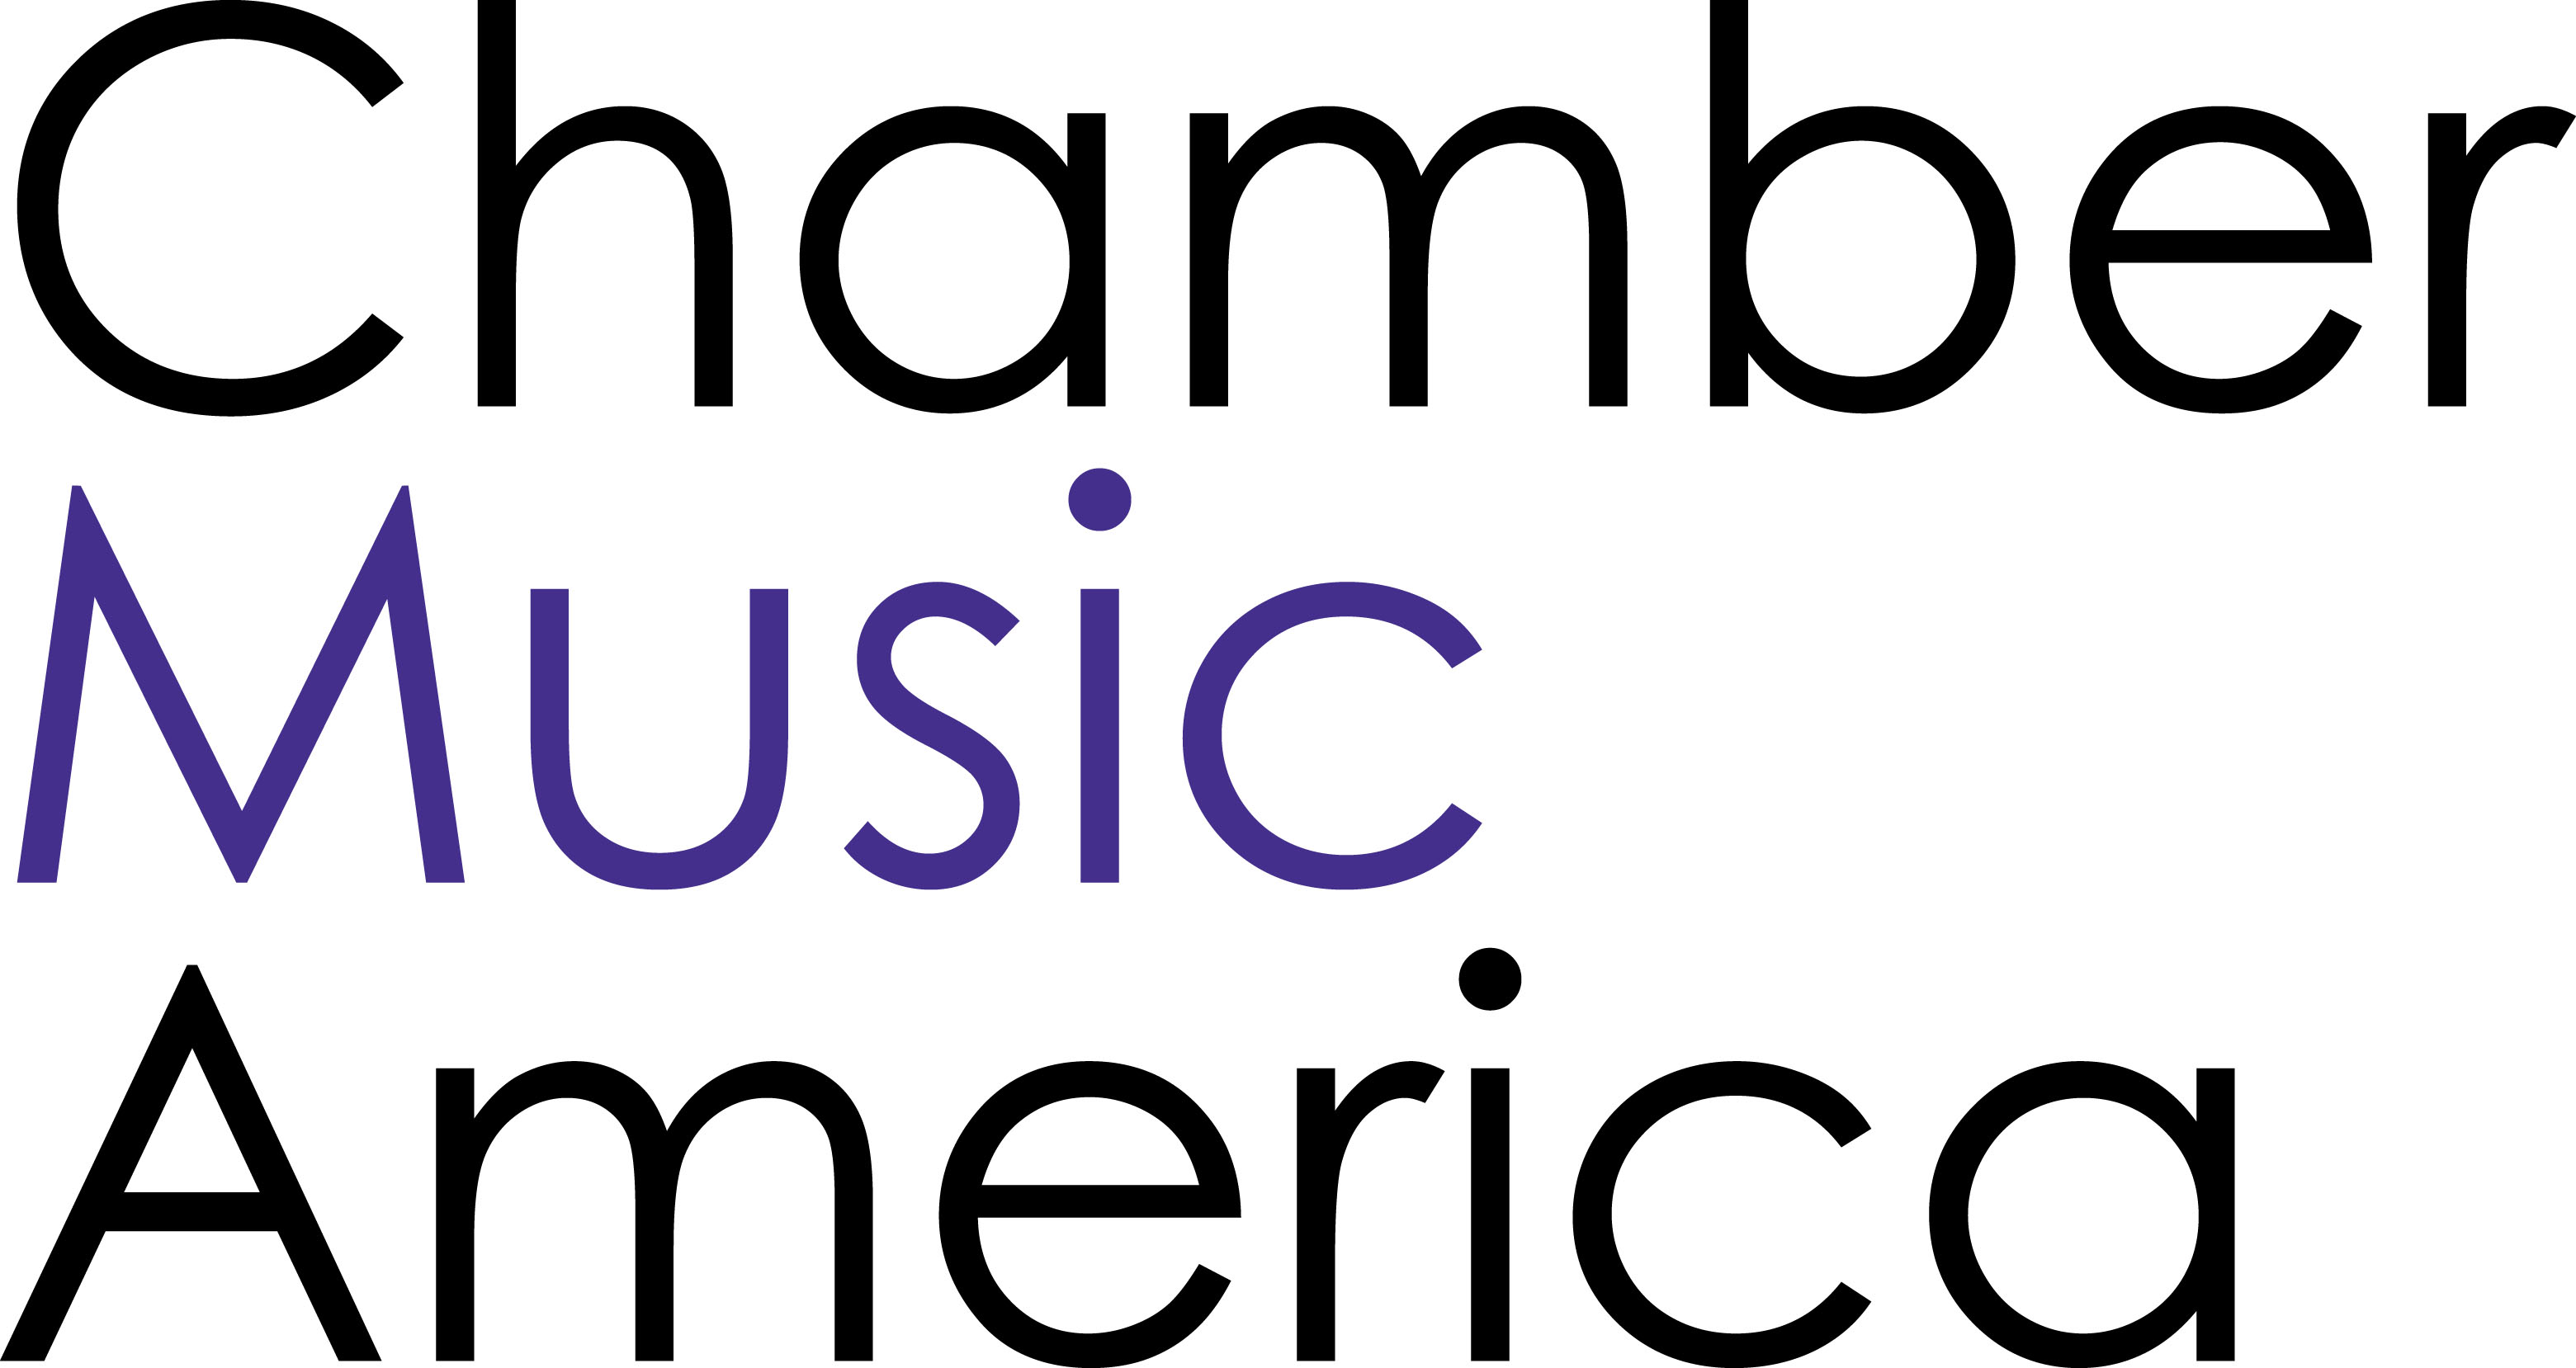 chamber music america logo